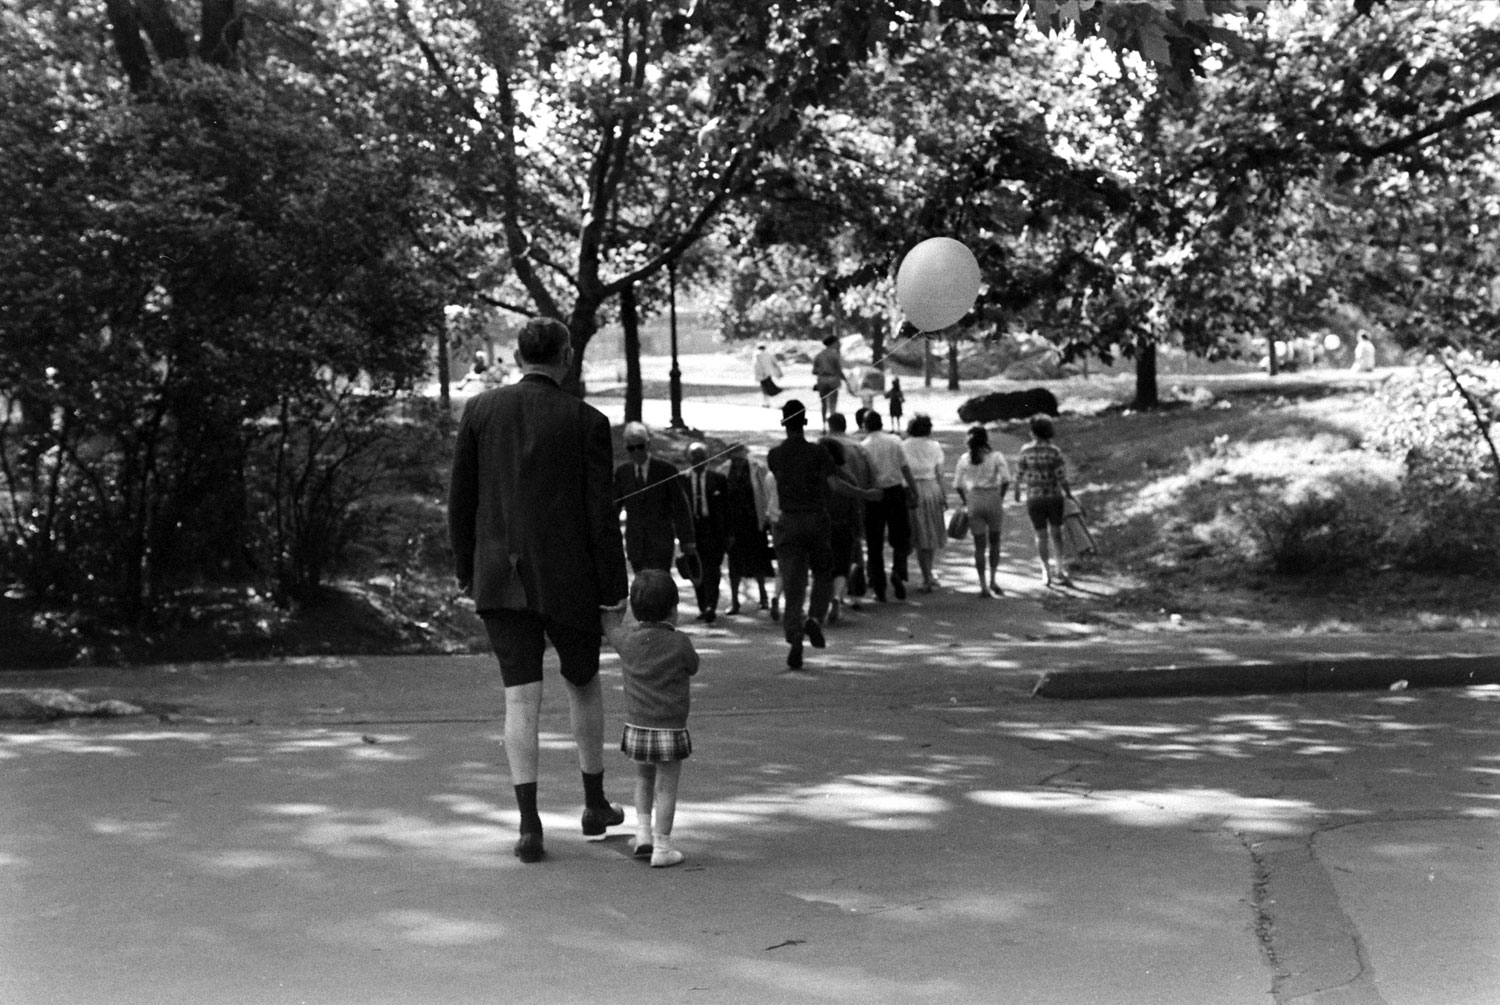 Scene in Central Park, 1961.